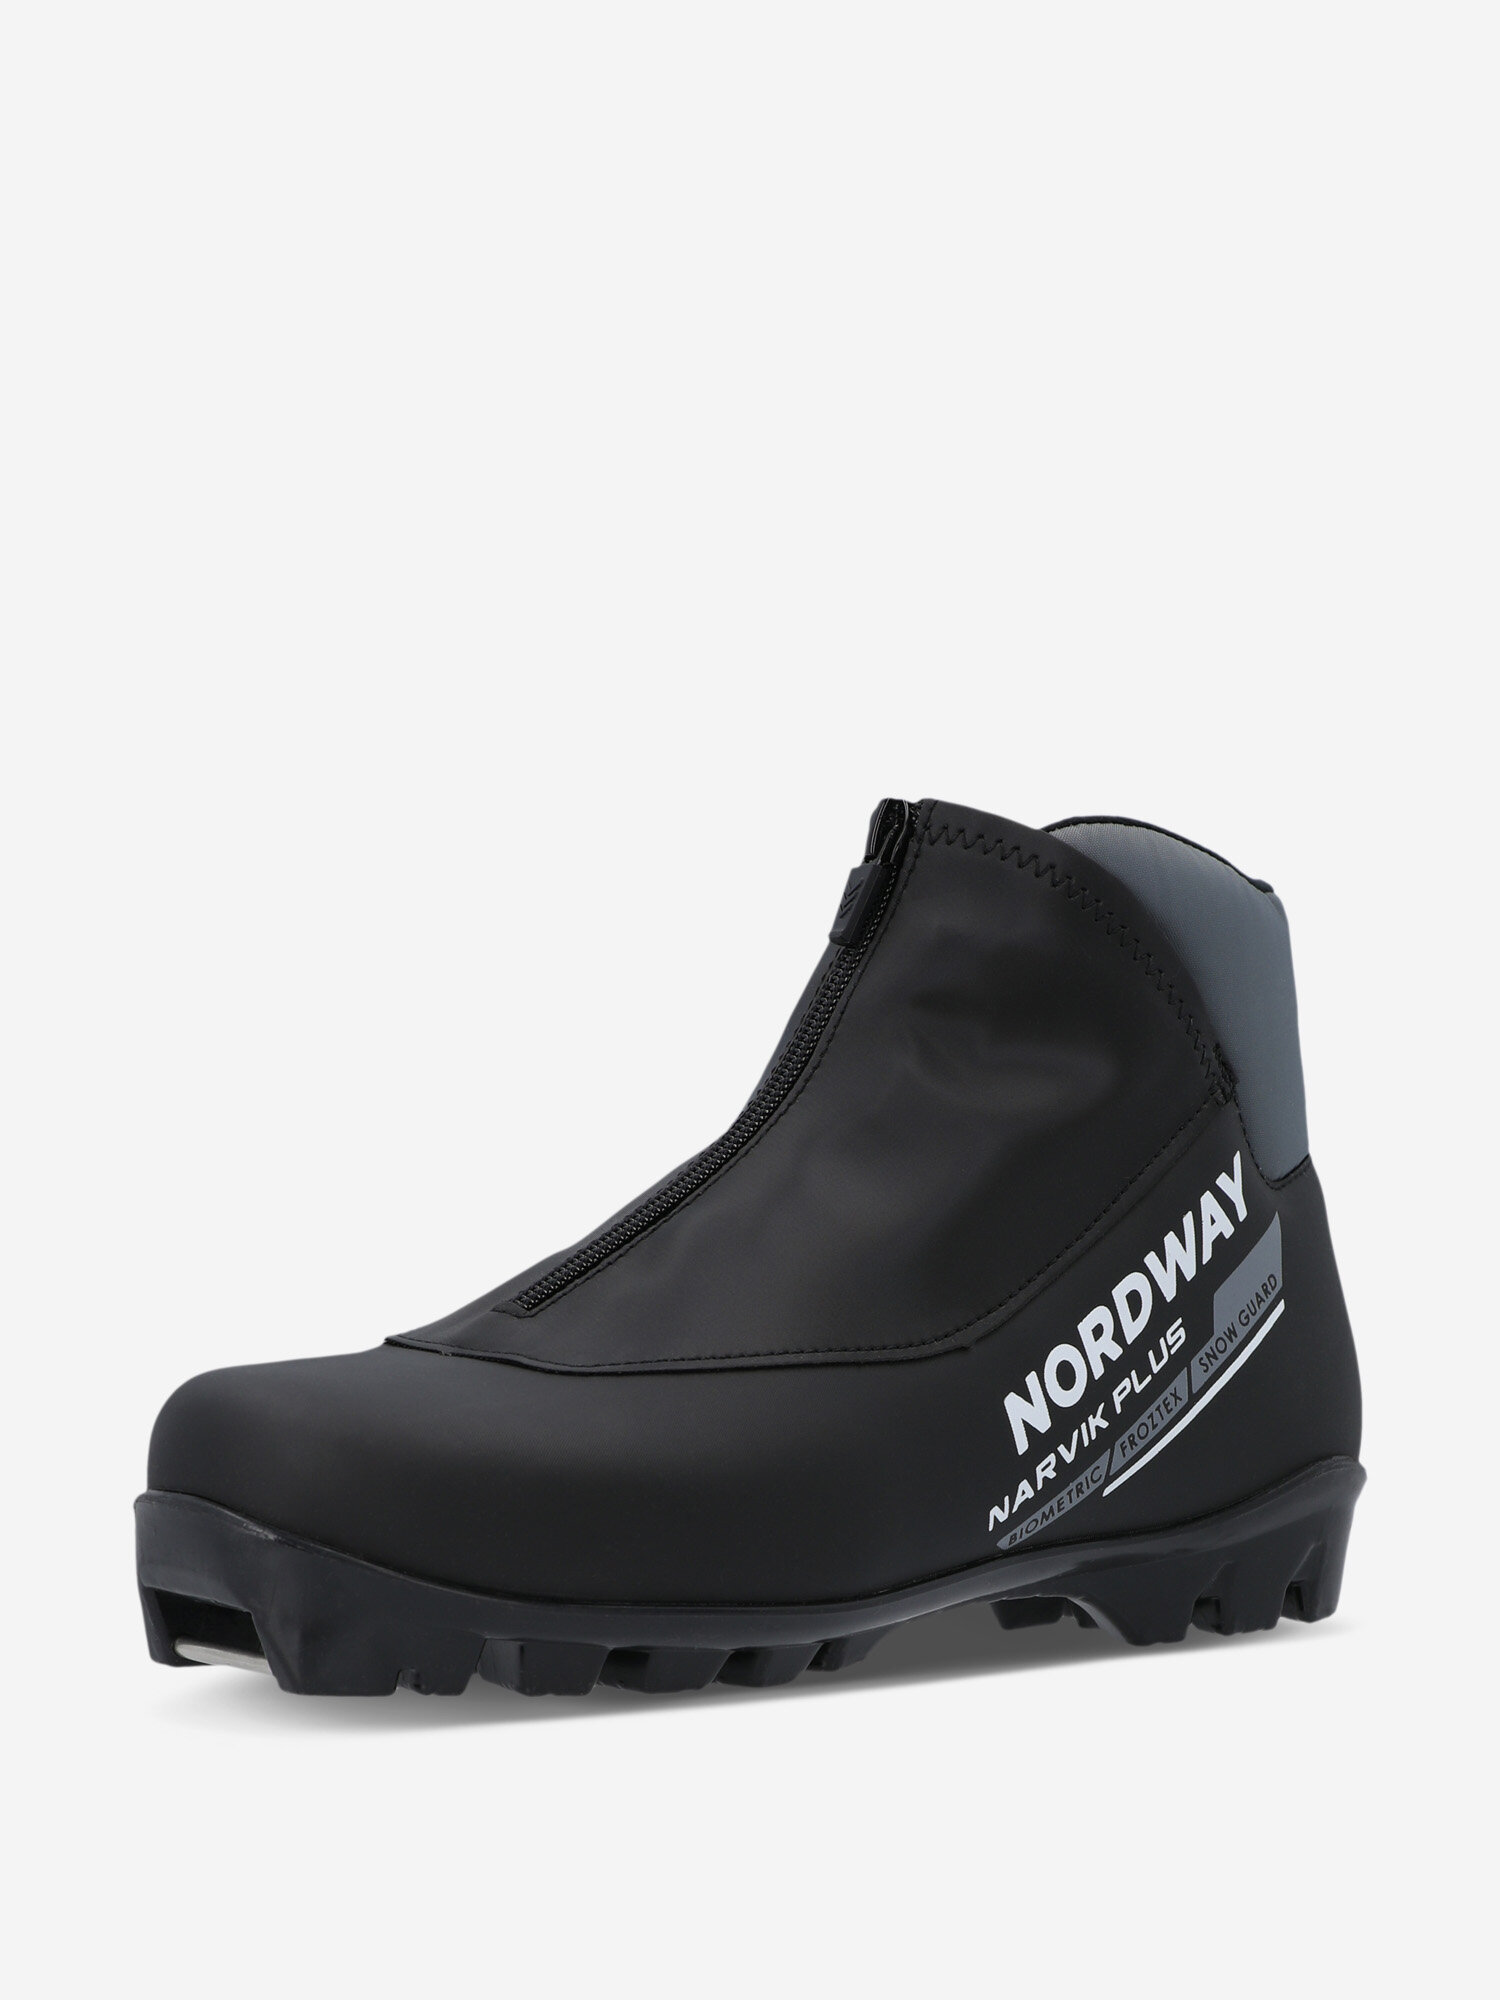 Ботинки для беговых лыж Nordway Narvik Plus NNN Черный; RUS: 45, Ориг: 46